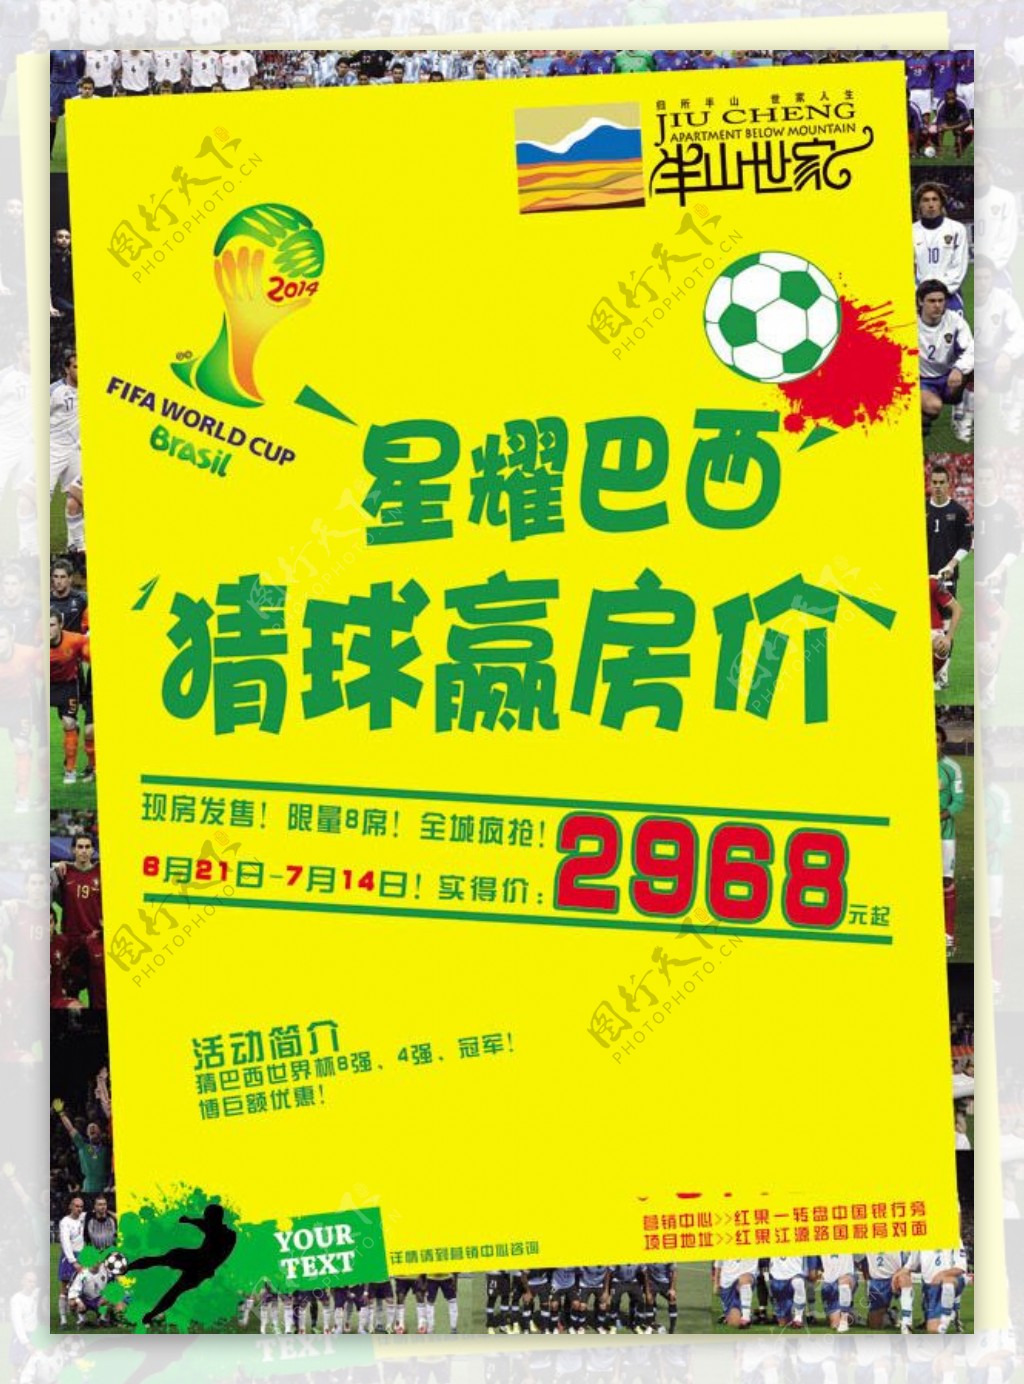 猜球赢房价房地产巴西世界杯促销海报